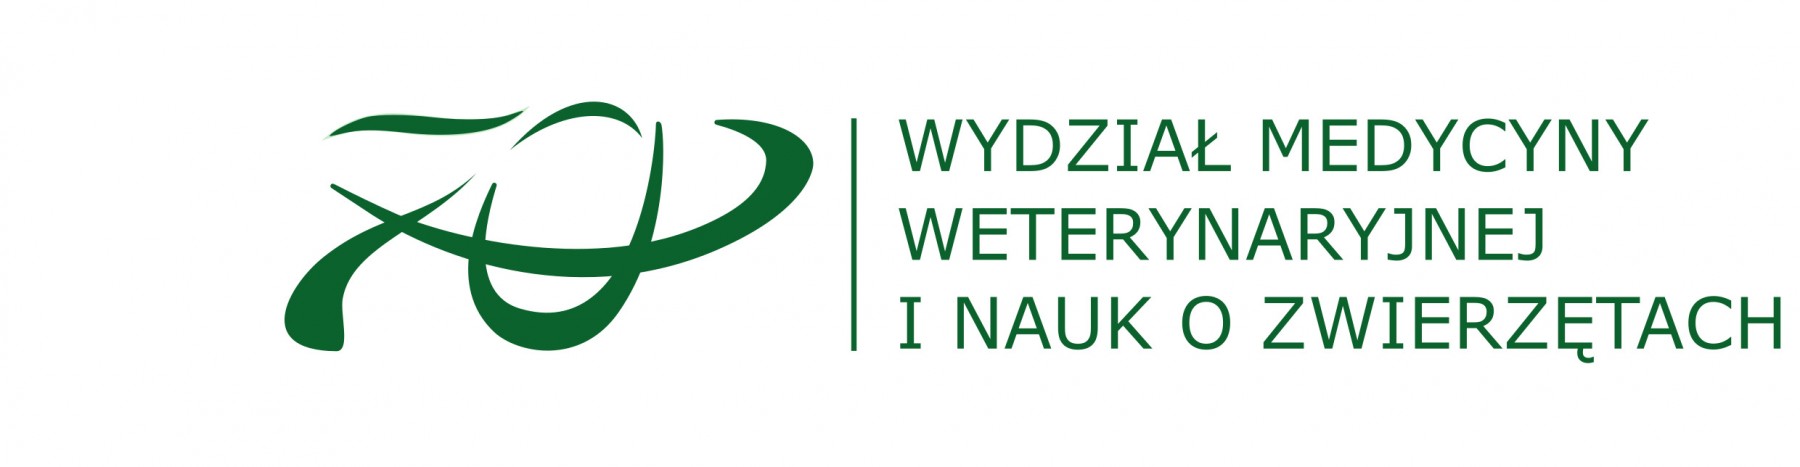 2021-11-01 logo_zielone_polskie_uklad_poziomy_70_ALLGREEN_WMWINOZ.jpg